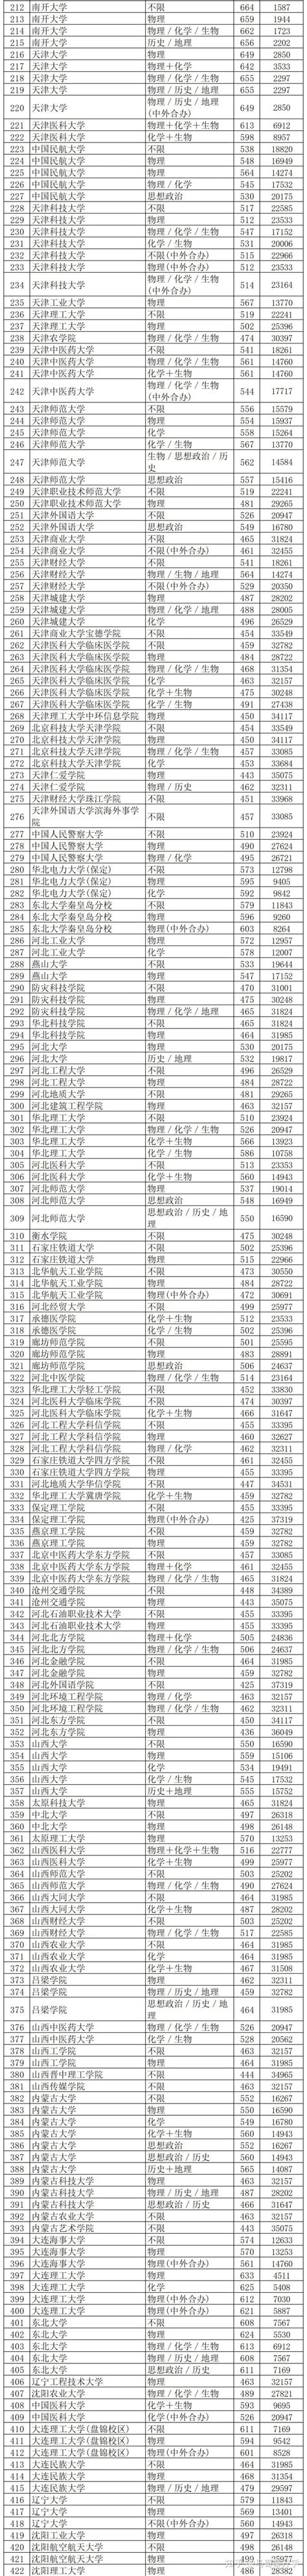 2021年北京新中考海淀区第一次全区排名(2)_中考资讯_中考网